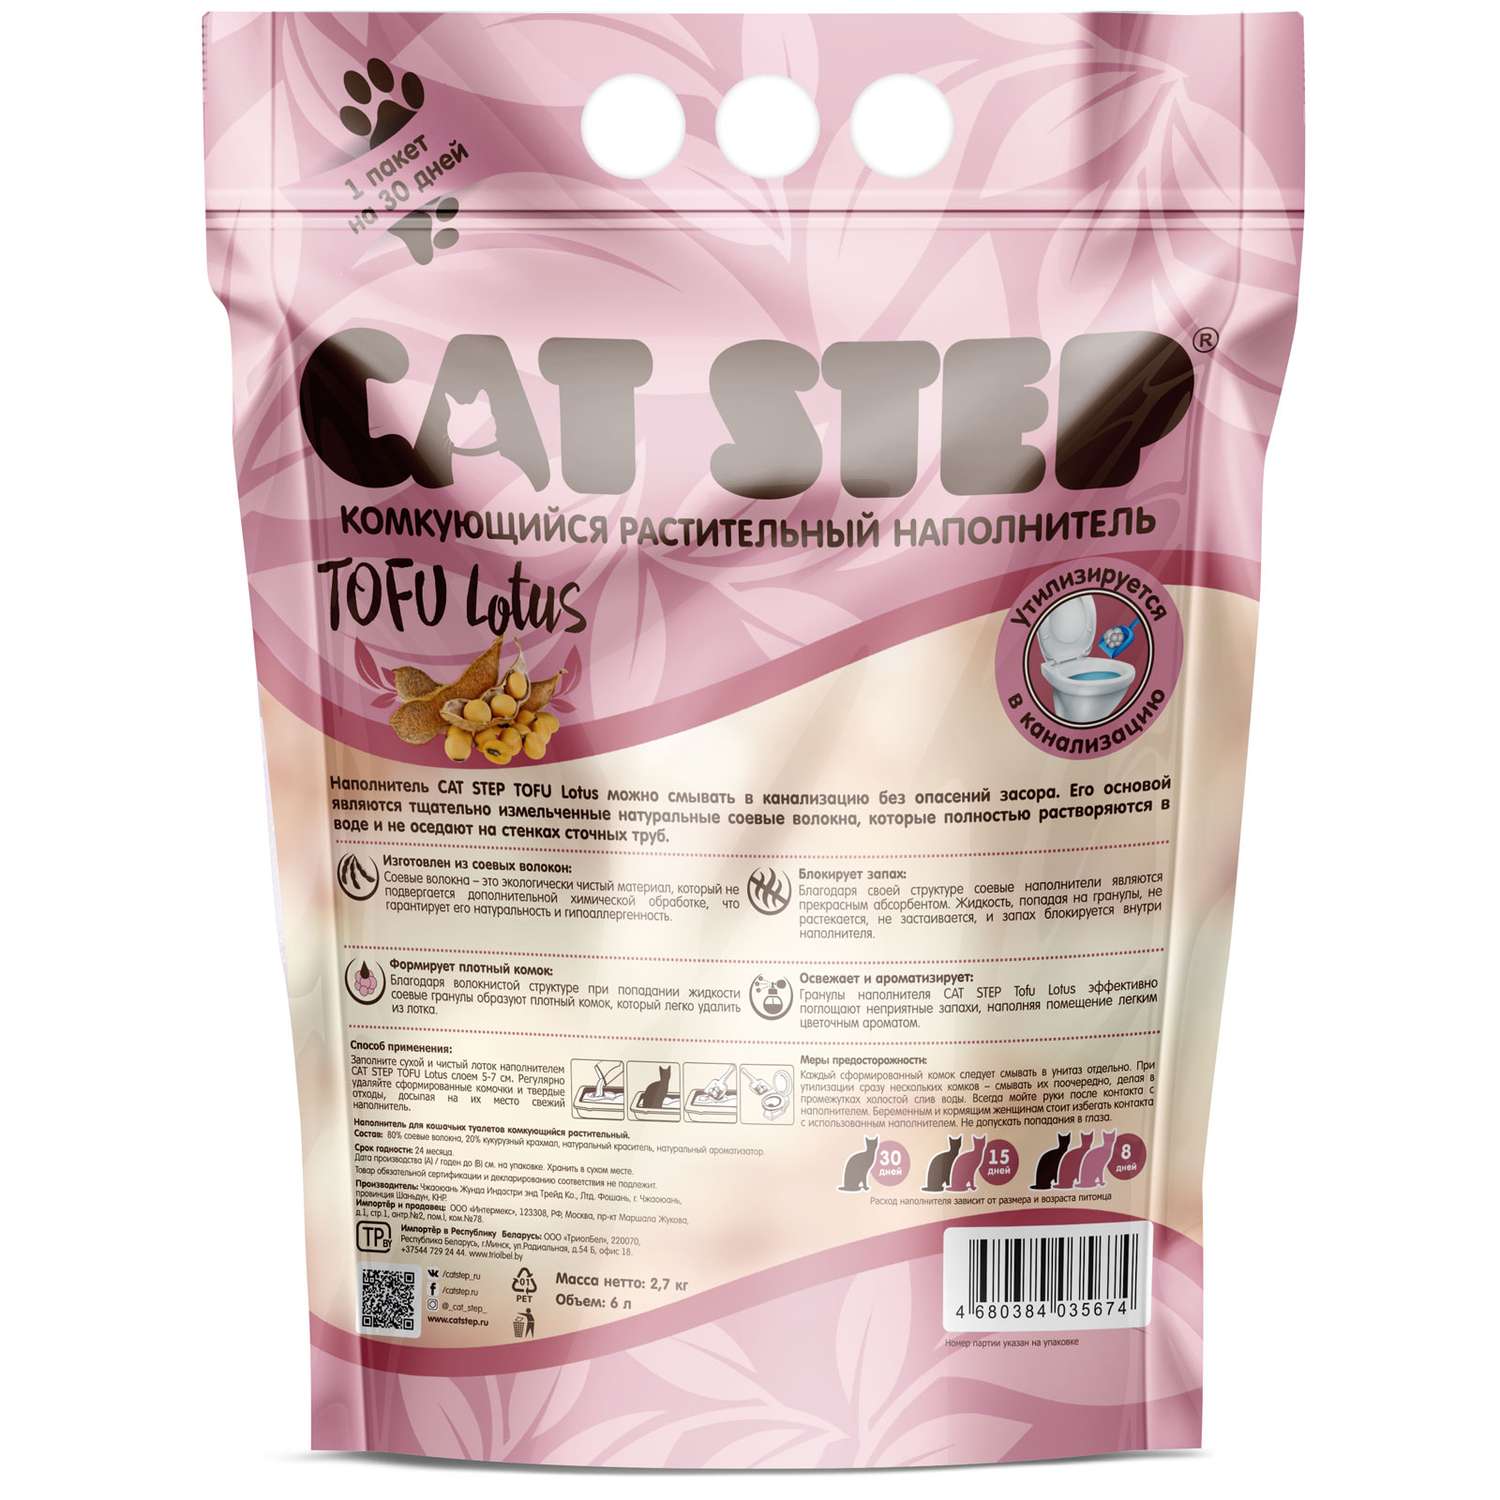 Наполнитель для кошек Cat Step Tofu Lotus растительный комкующийся 6л - фото 2